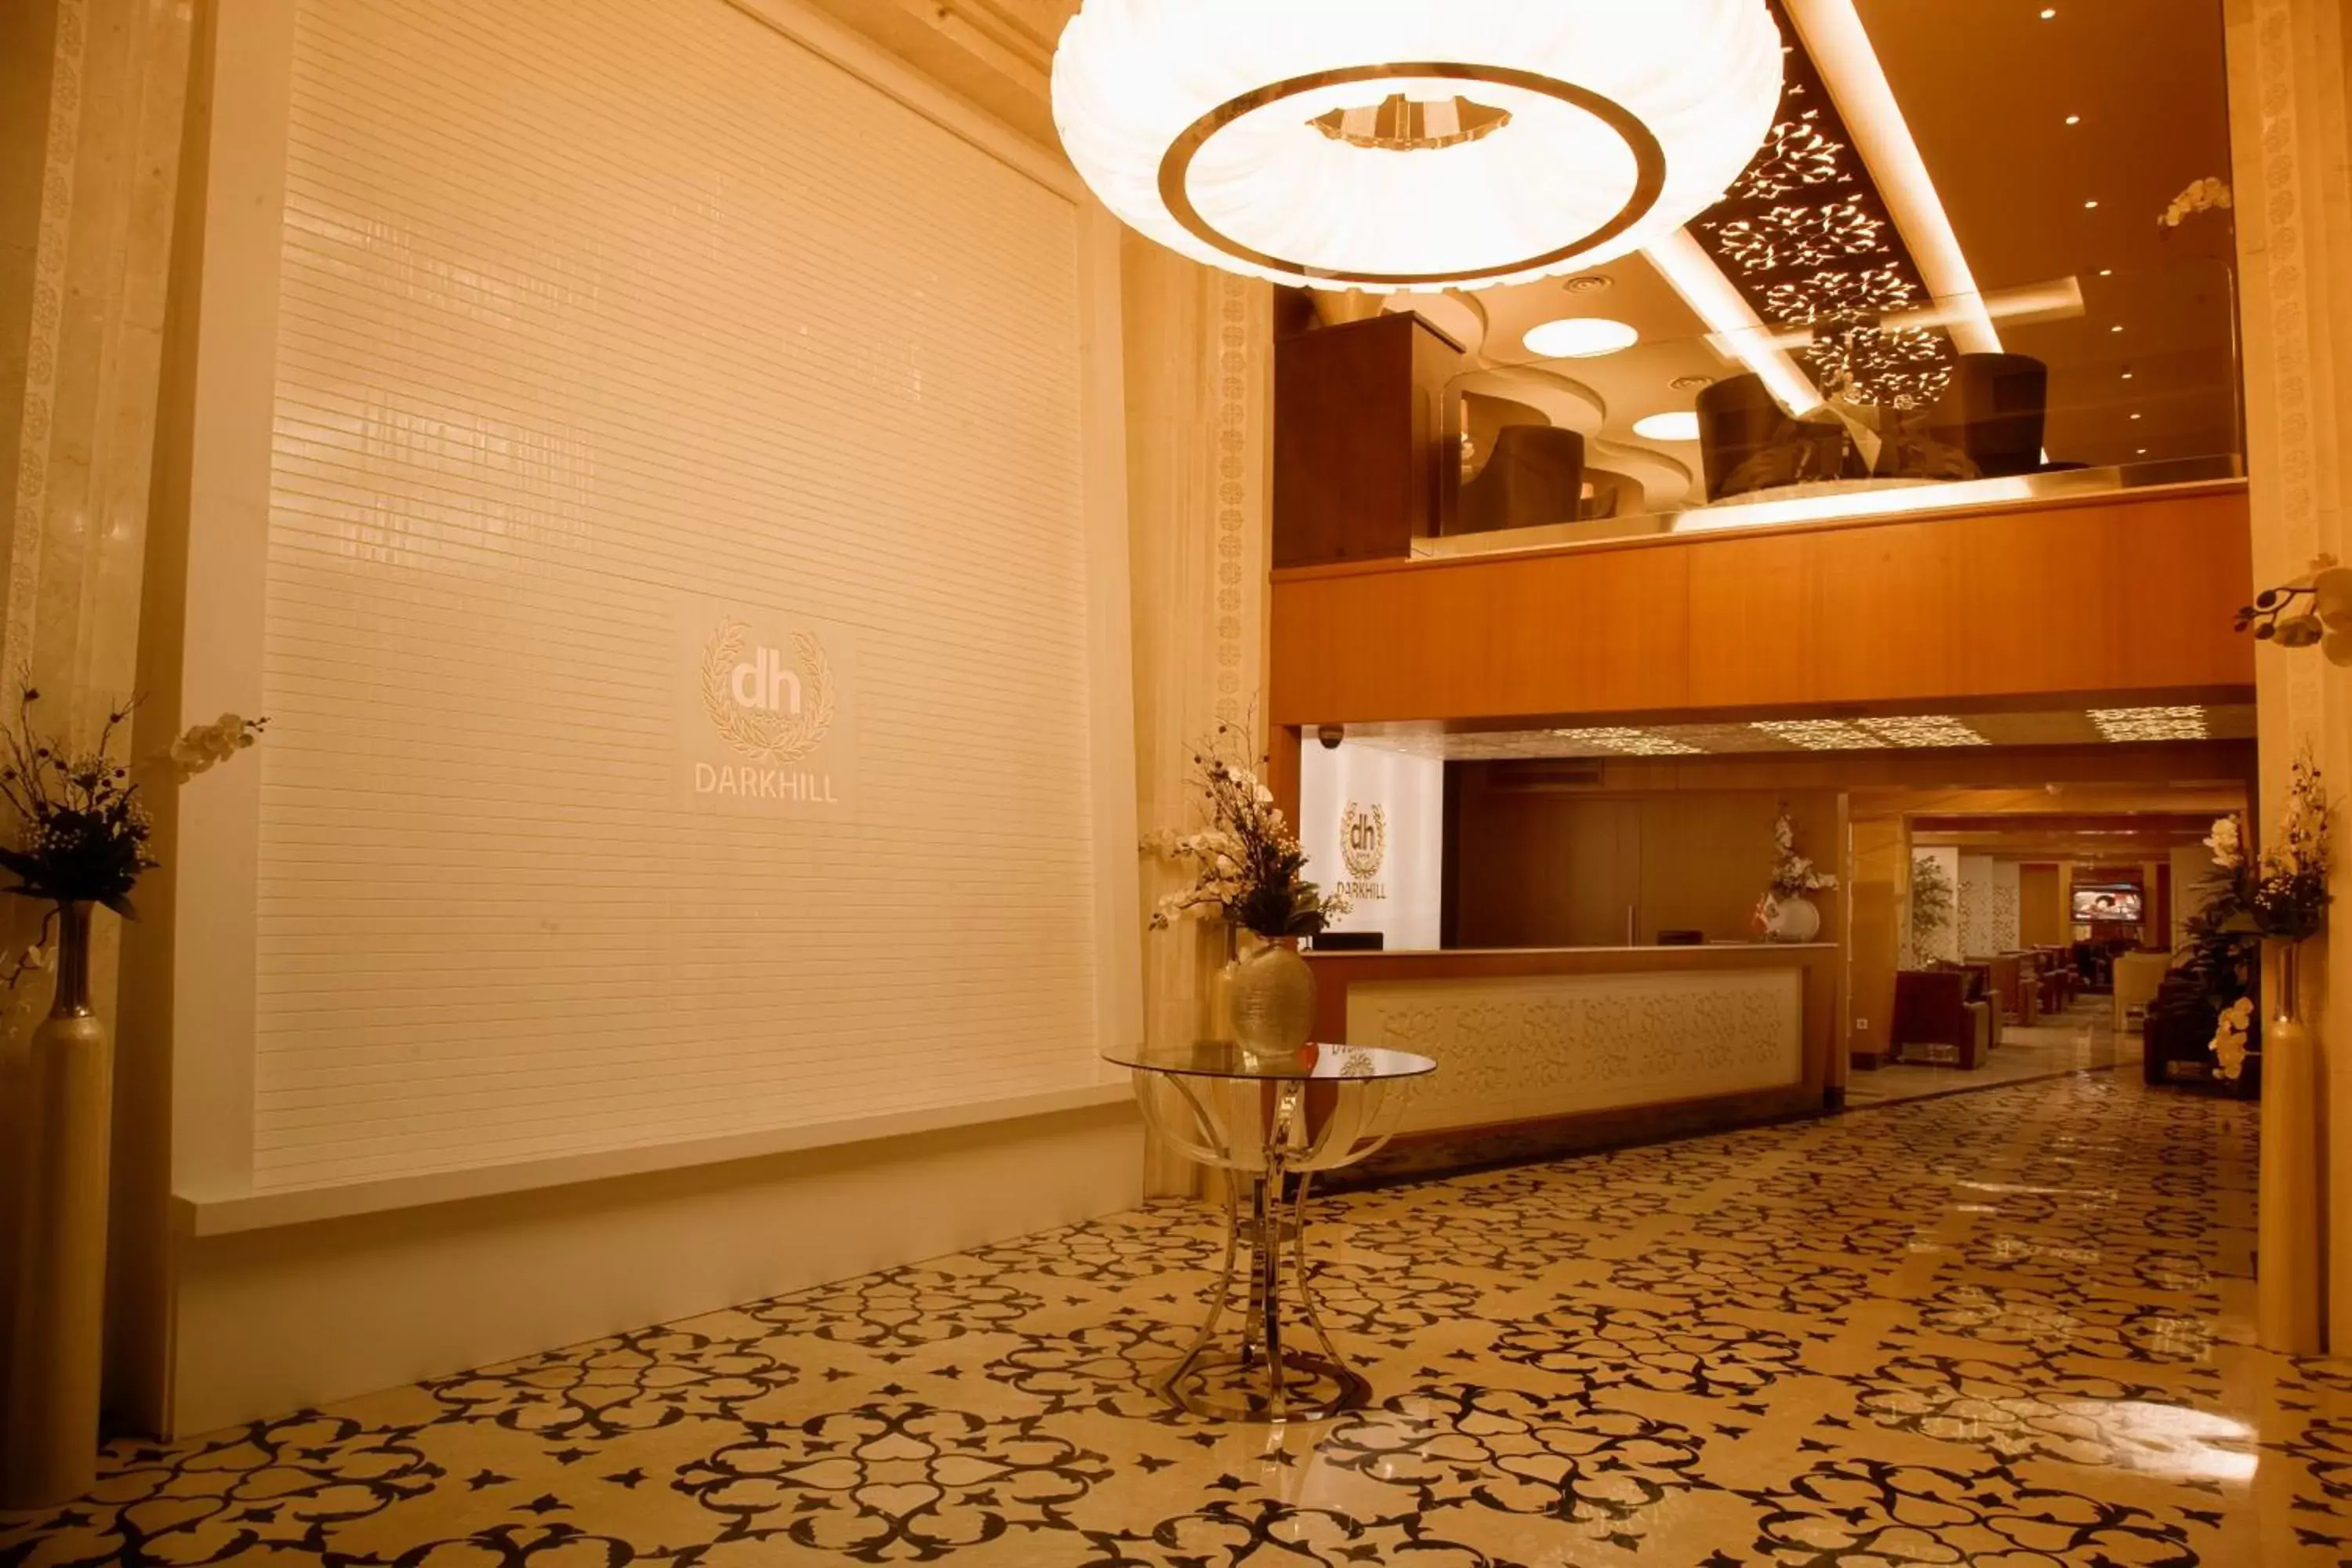 Lobby or reception in Darkhill Hotel